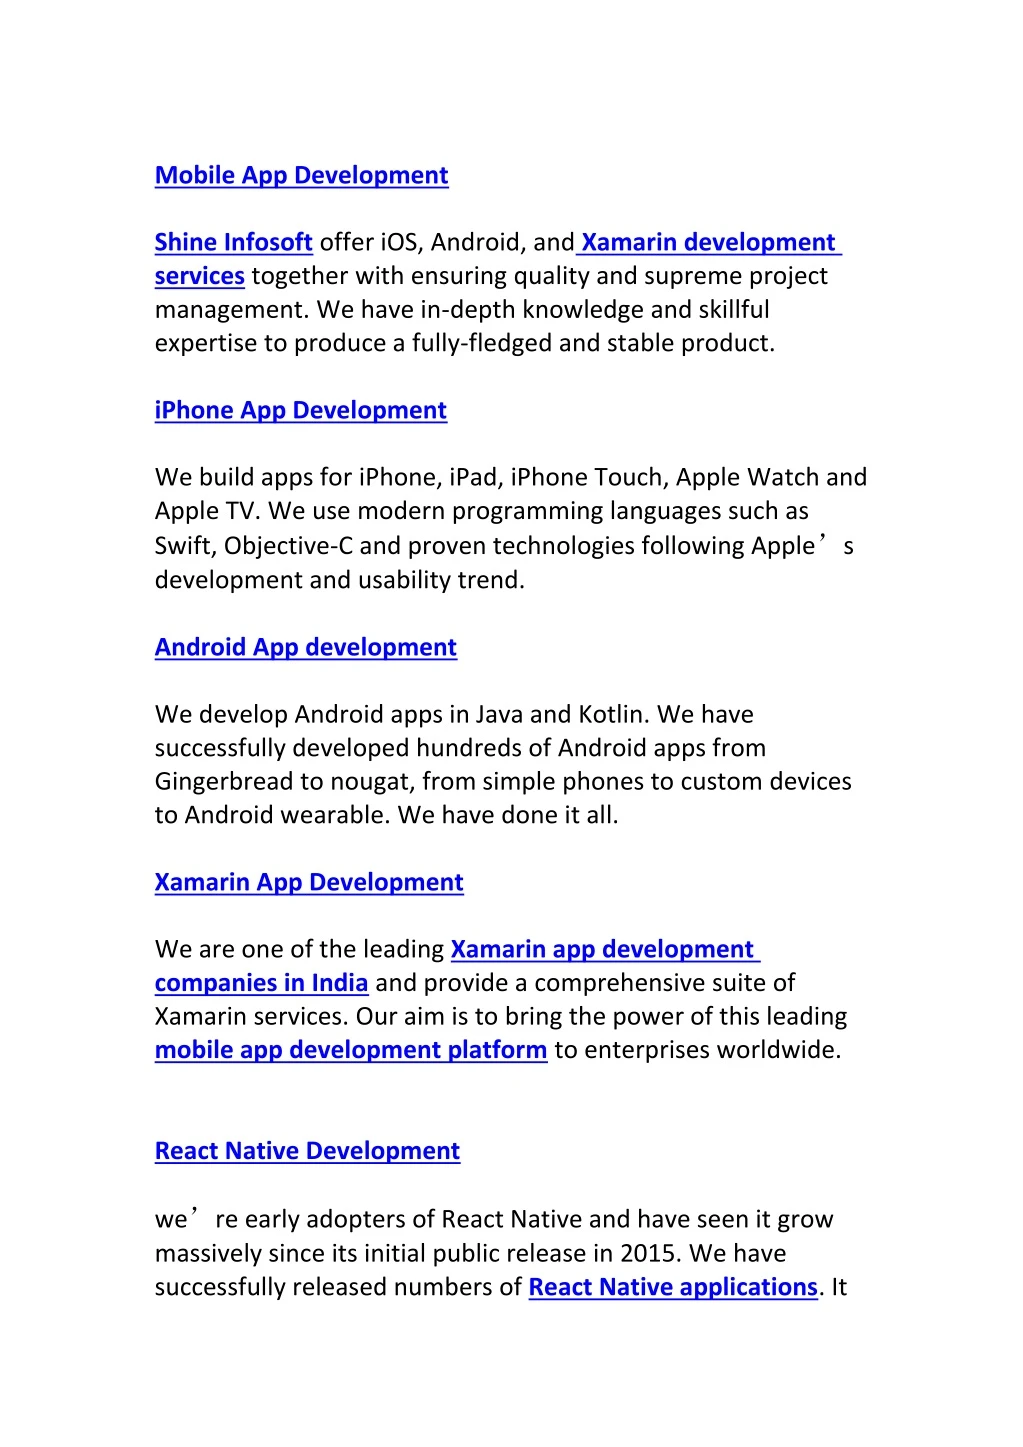 mobile app development shine infosoft offer